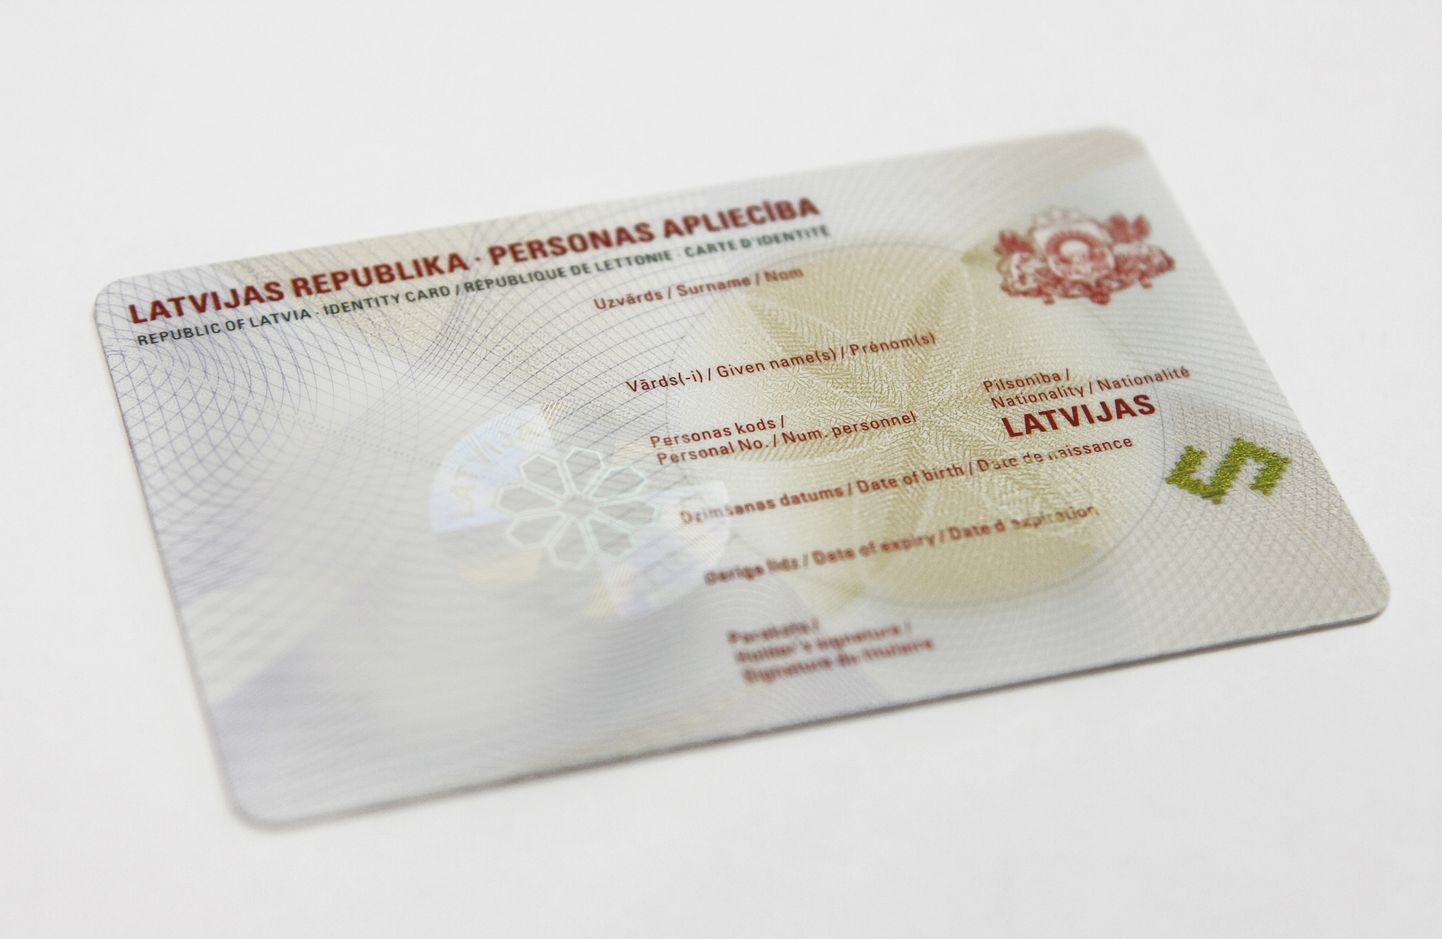 Personas apliecība jeb elektroniskās identifikācijas kartes (eID) prototips, kuras Latvijā plānots sākt izsniegt no 2012.gada.